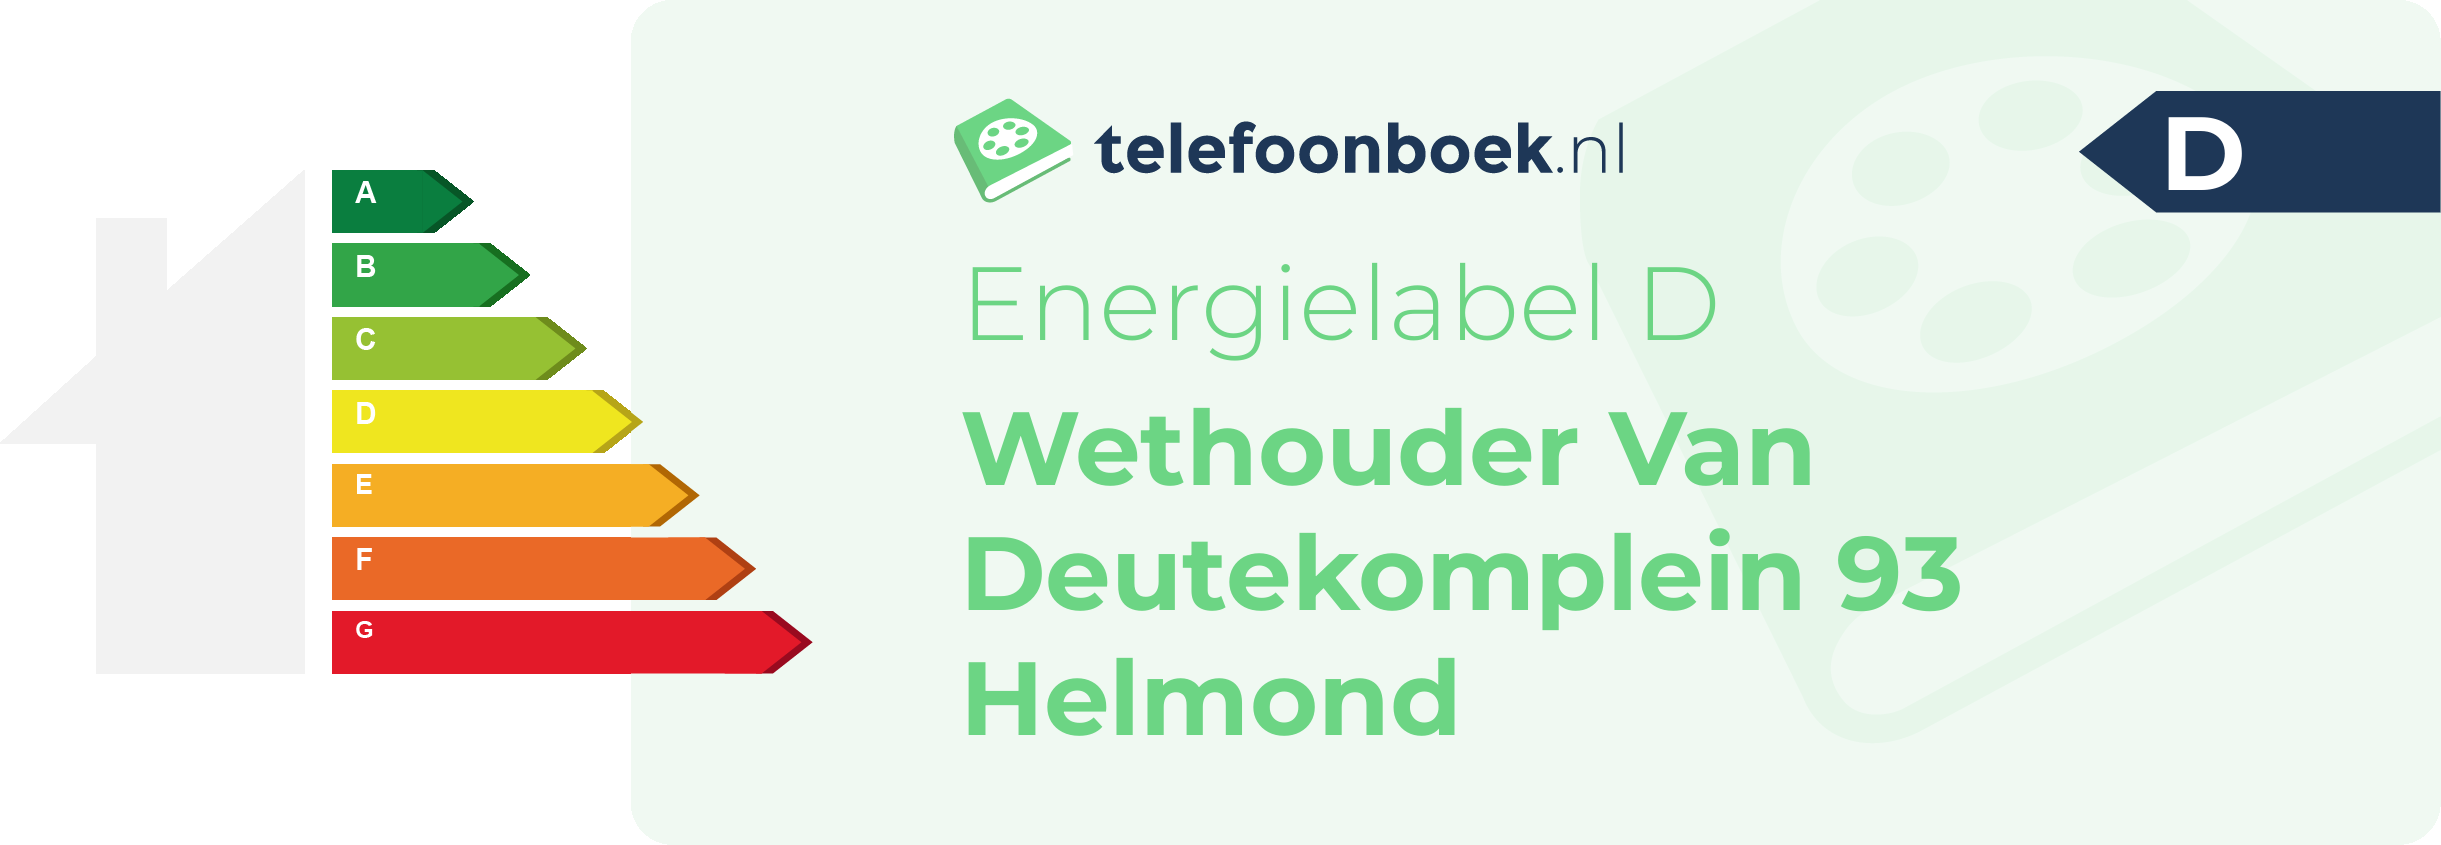 Energielabel Wethouder Van Deutekomplein 93 Helmond